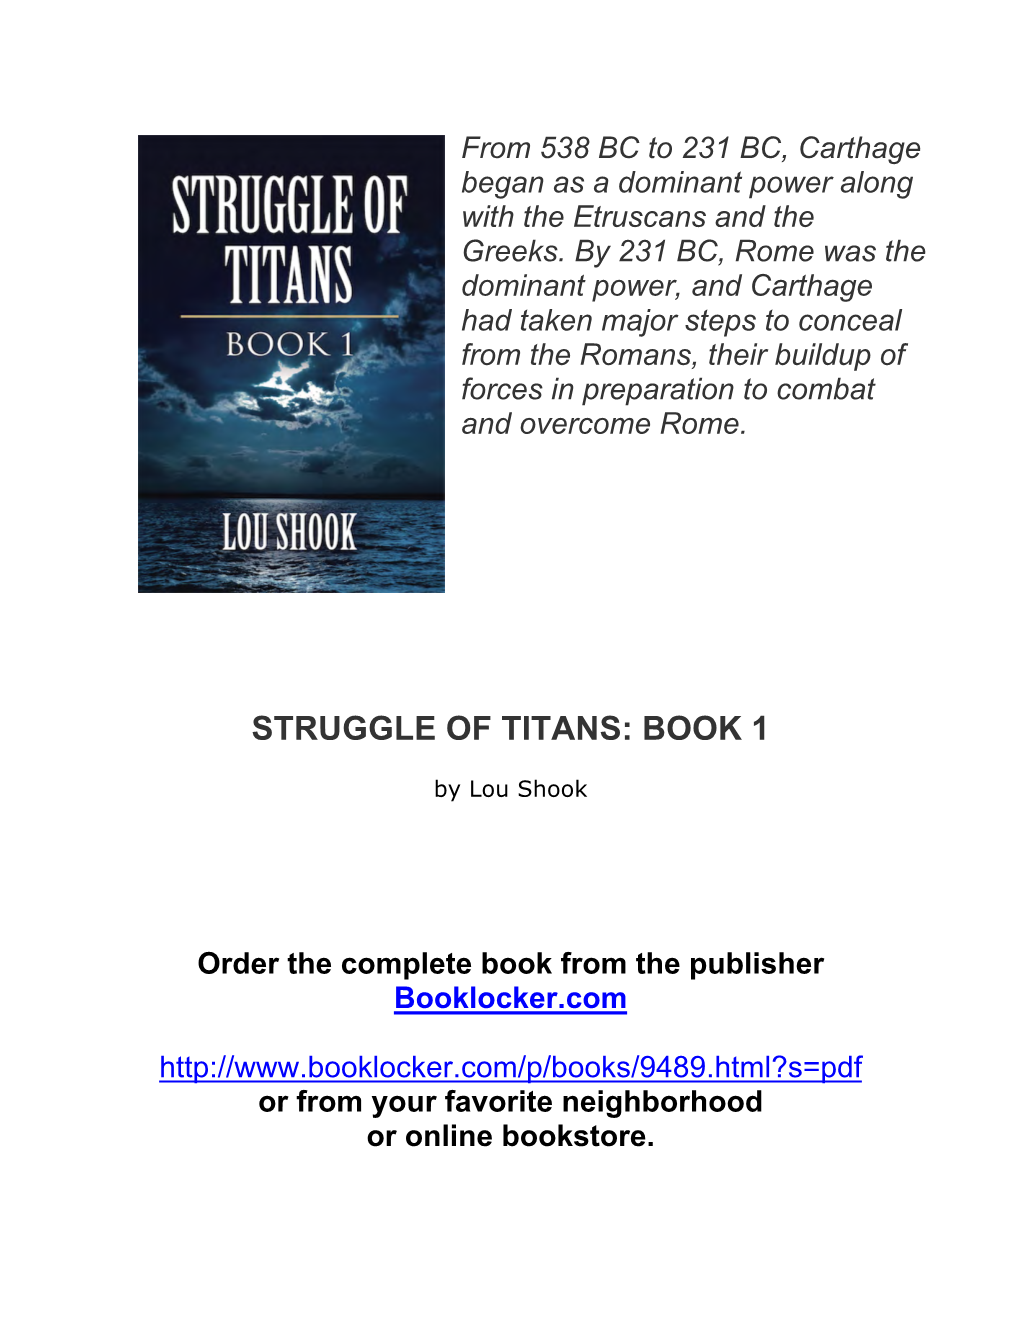 Struggle of Titans: Book 1